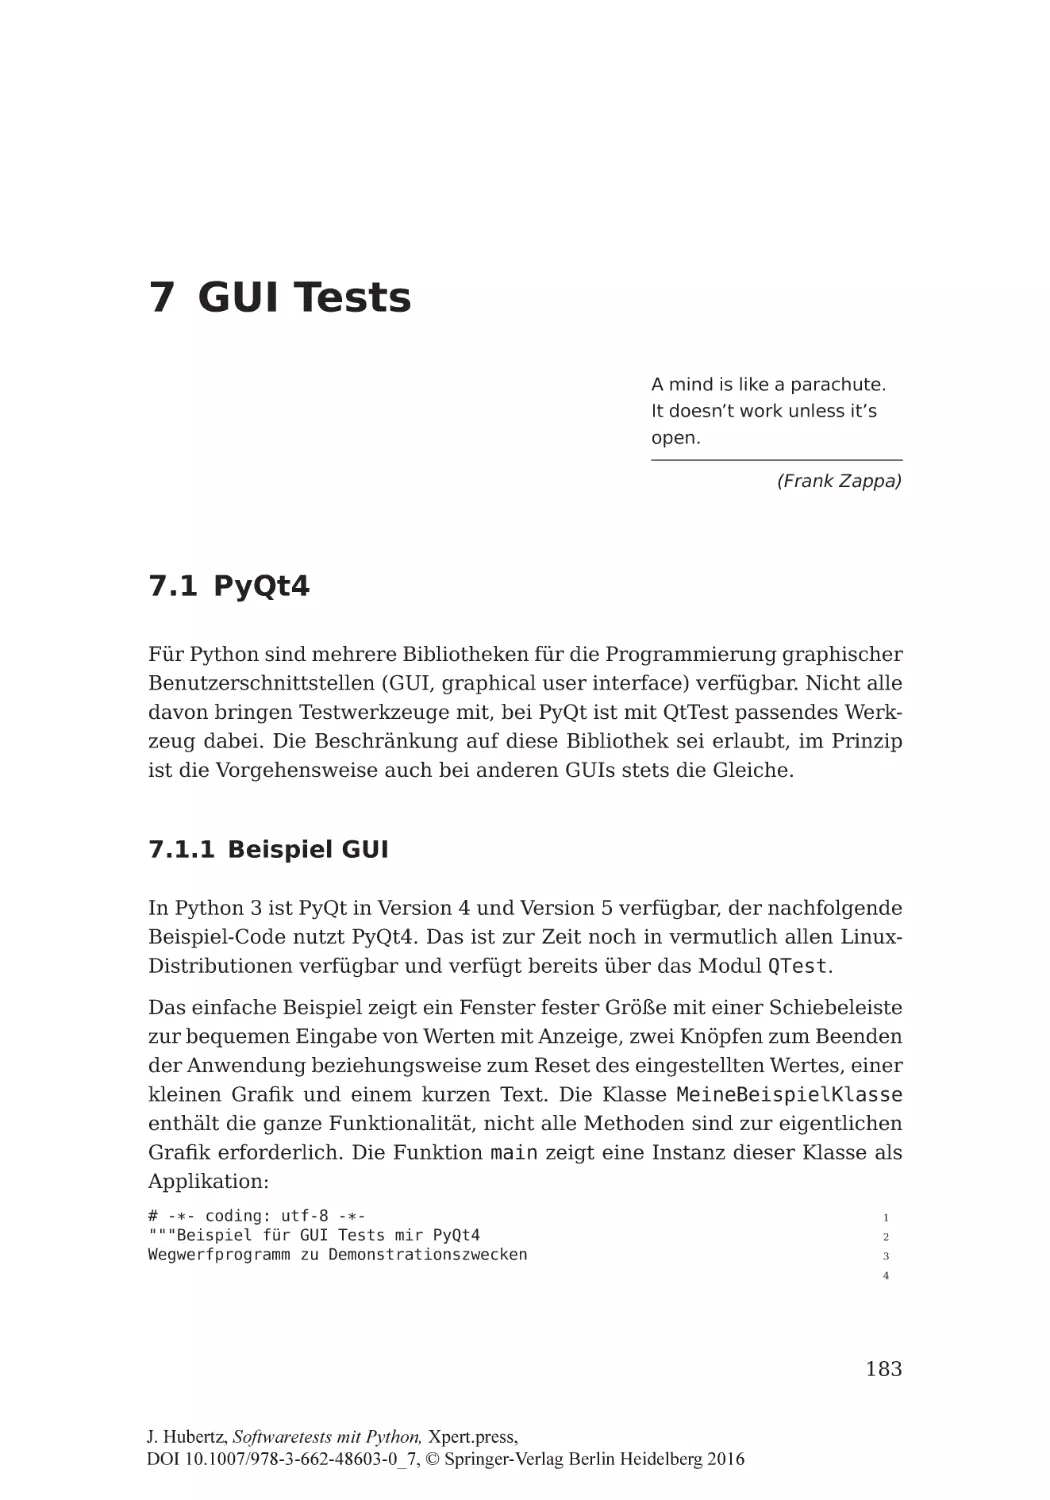 7 GUI Tests
7.1 PyQt4
7.1.1 Beispiel GUI